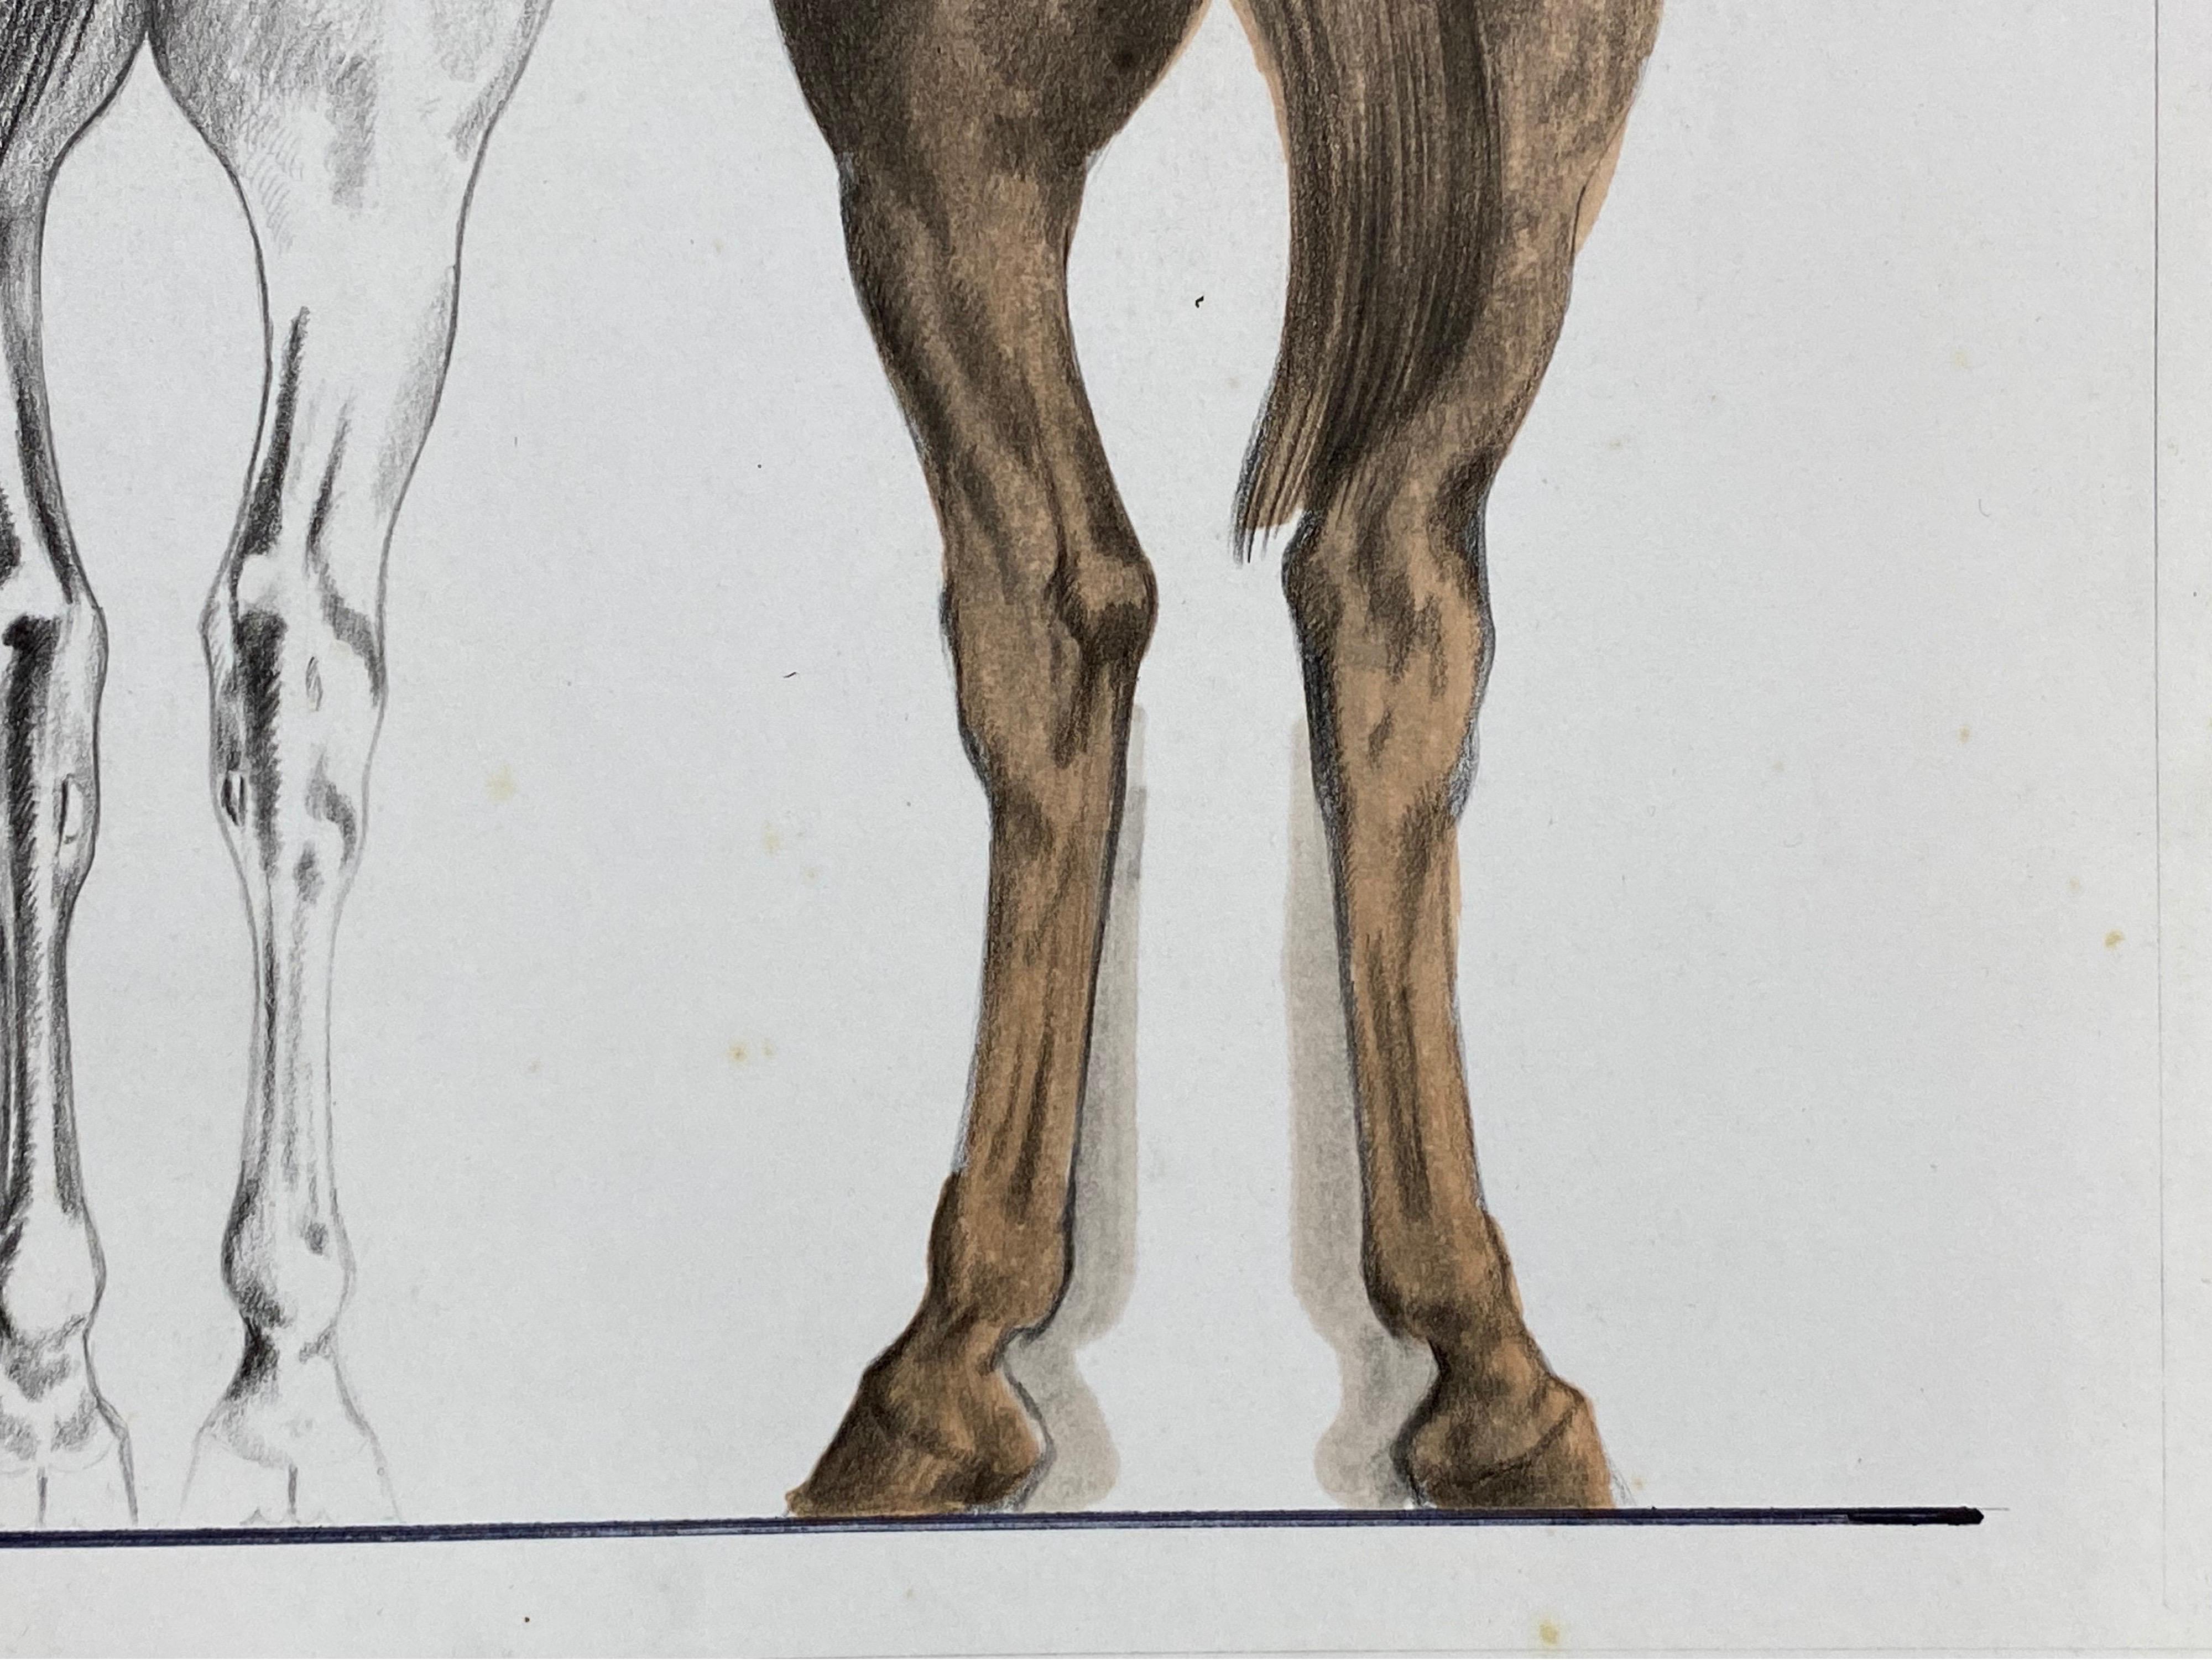 Die Anatomie des Pferdes
von Robert Ladou (Französisch 1929-2014)
originalzeichnung auf Karton/ dickem Papier aufgeklebt, ungerahmt
größe: 11,25 x 15,5
gesamtgröße: 12,5 x 19,5
zustand: sehr gut
provenienz: aus dem Nachlass des Künstlers in